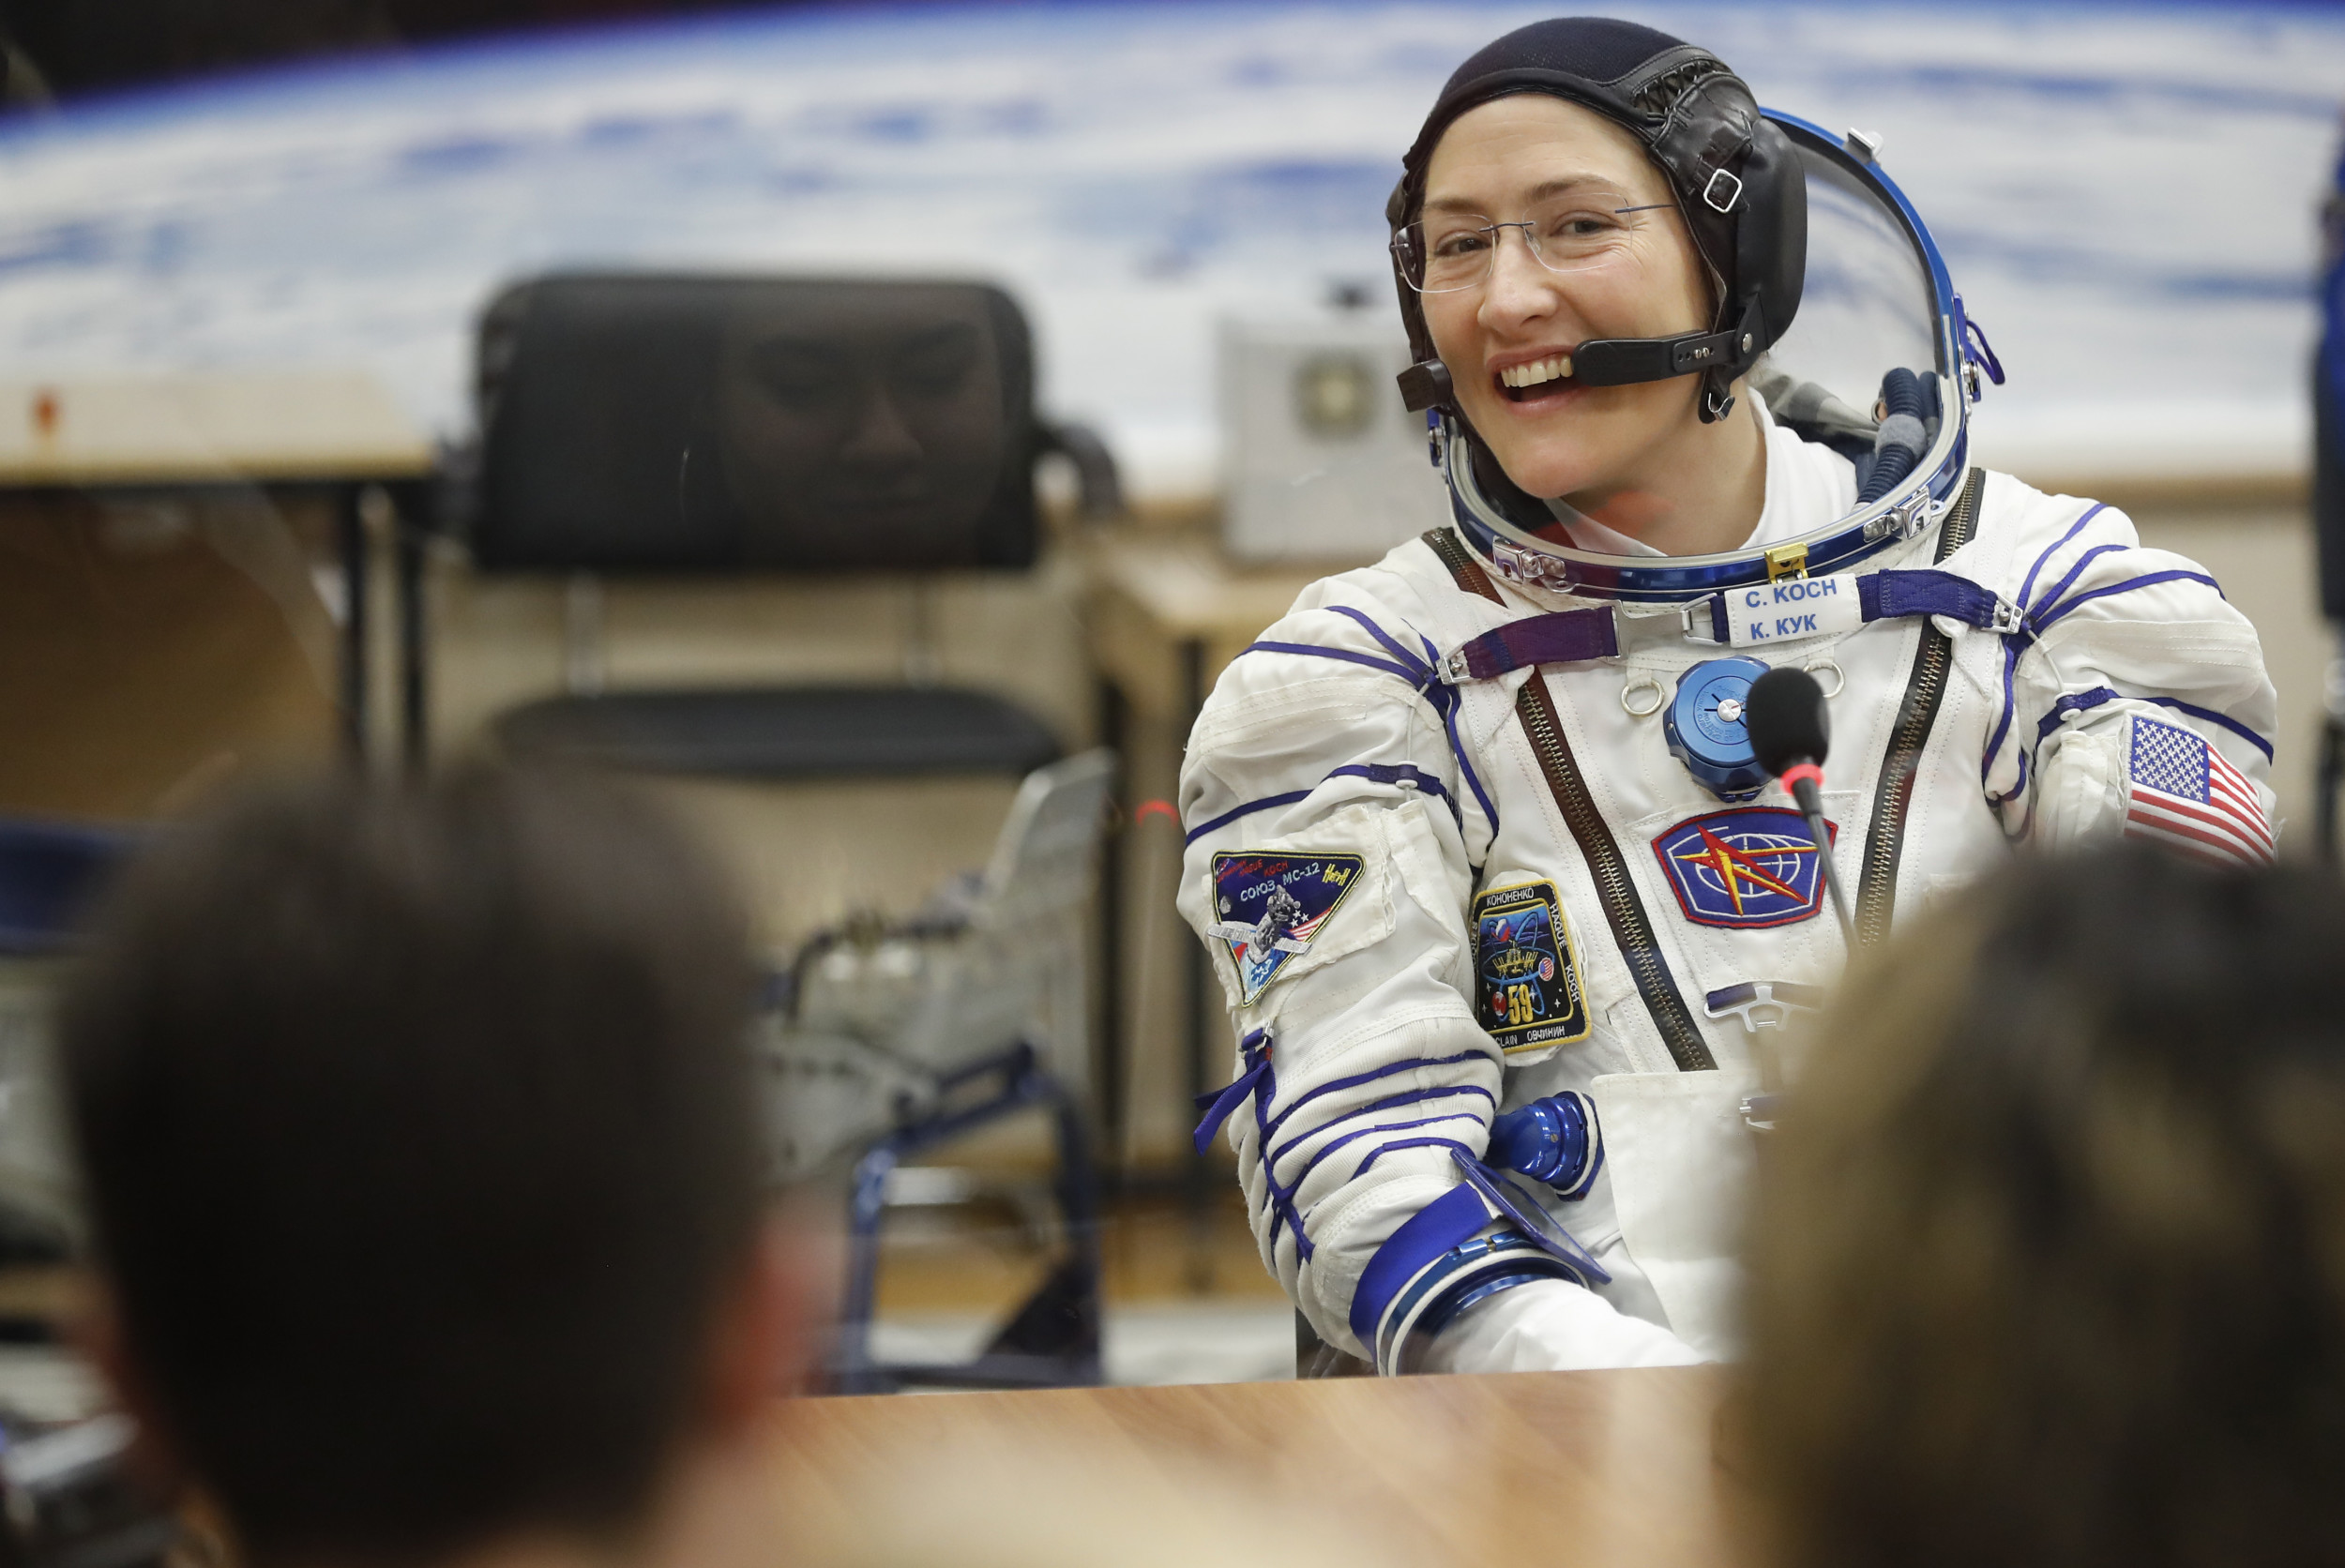 Какая женщина вышла в космос. Астронавт Кук. Женщина астронавт. Женщина космонавт США. Женщины в НАСА.